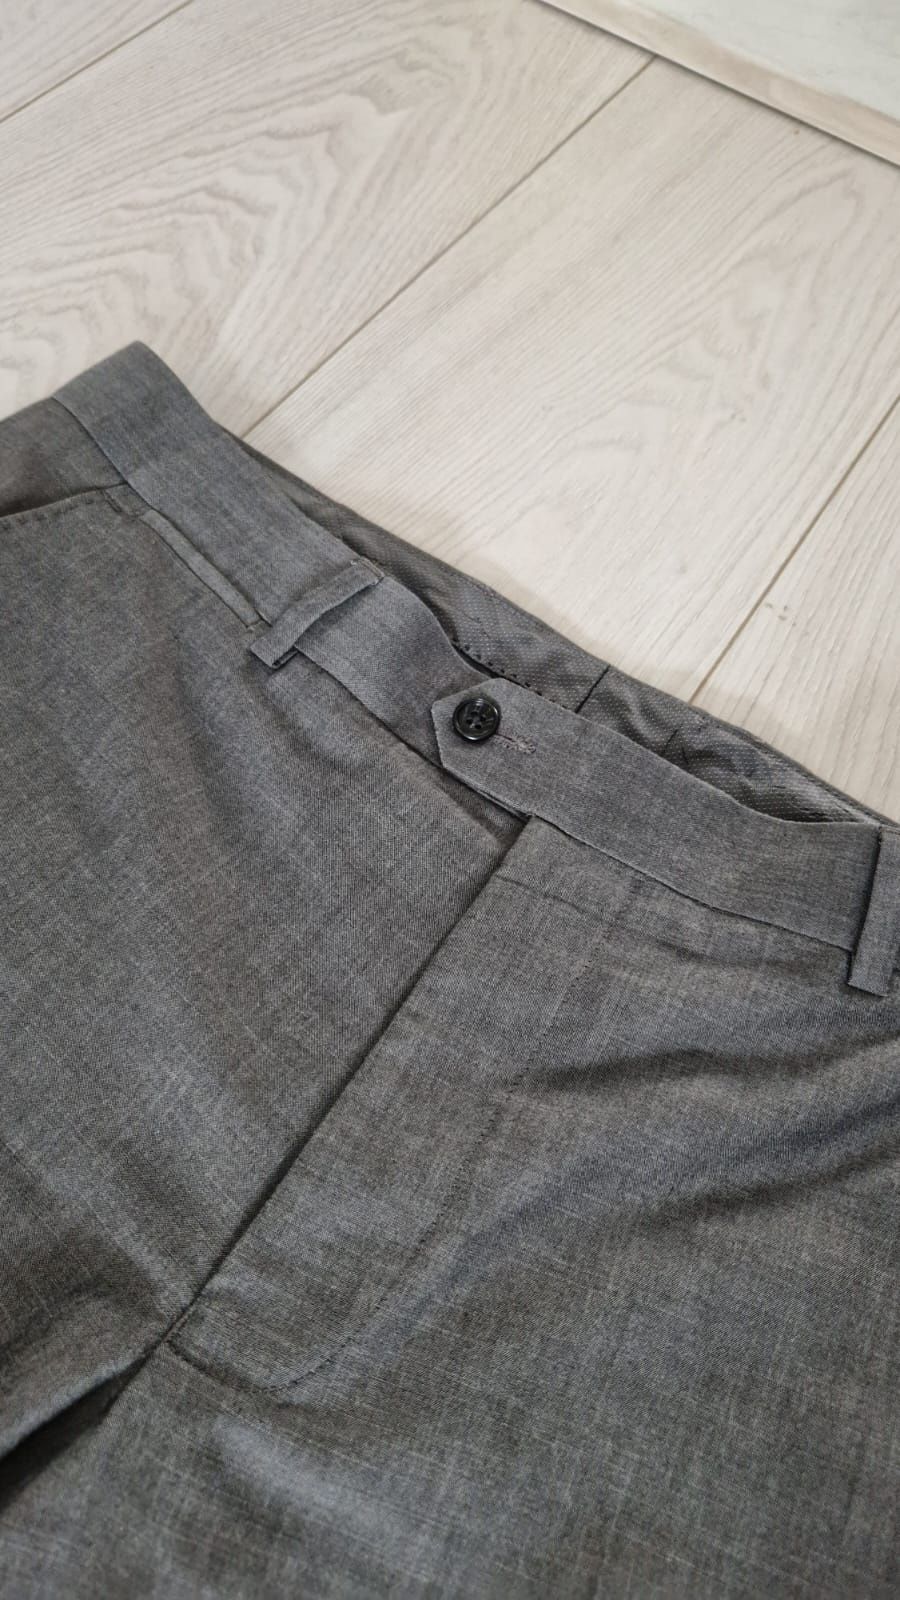 Ciemnoszare spodnie garniturowe w kant F&F, rozmiar 34/32